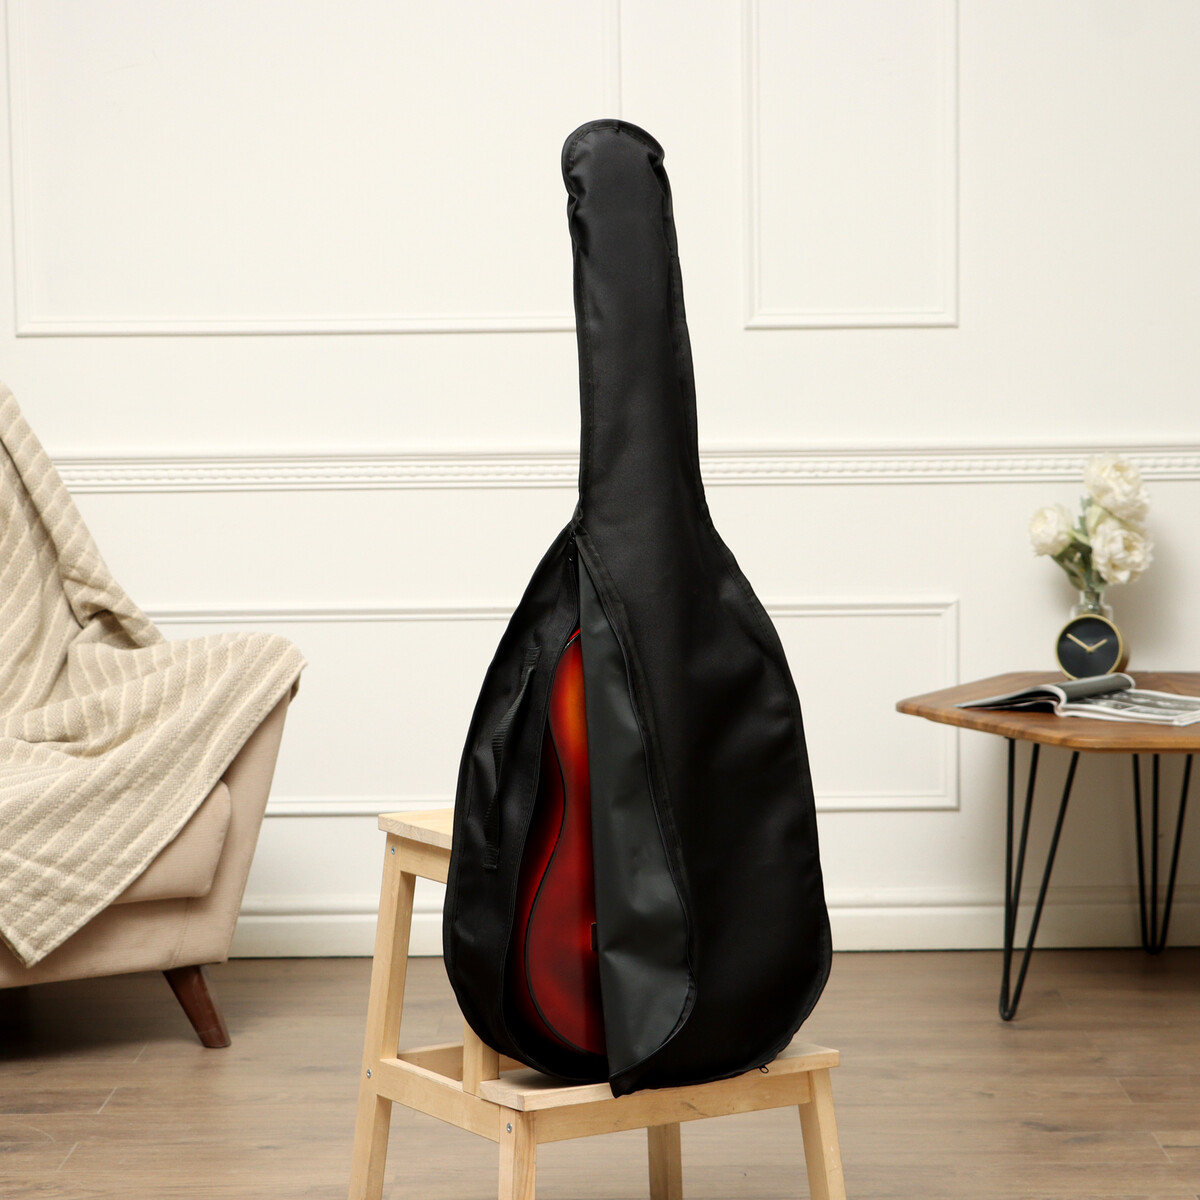 Чехол для классической гитары, окантован, 105 х 41 х 12,5 см чехол для гитары с мензурой 610 мм утепленный 98 х 38 х 12 см